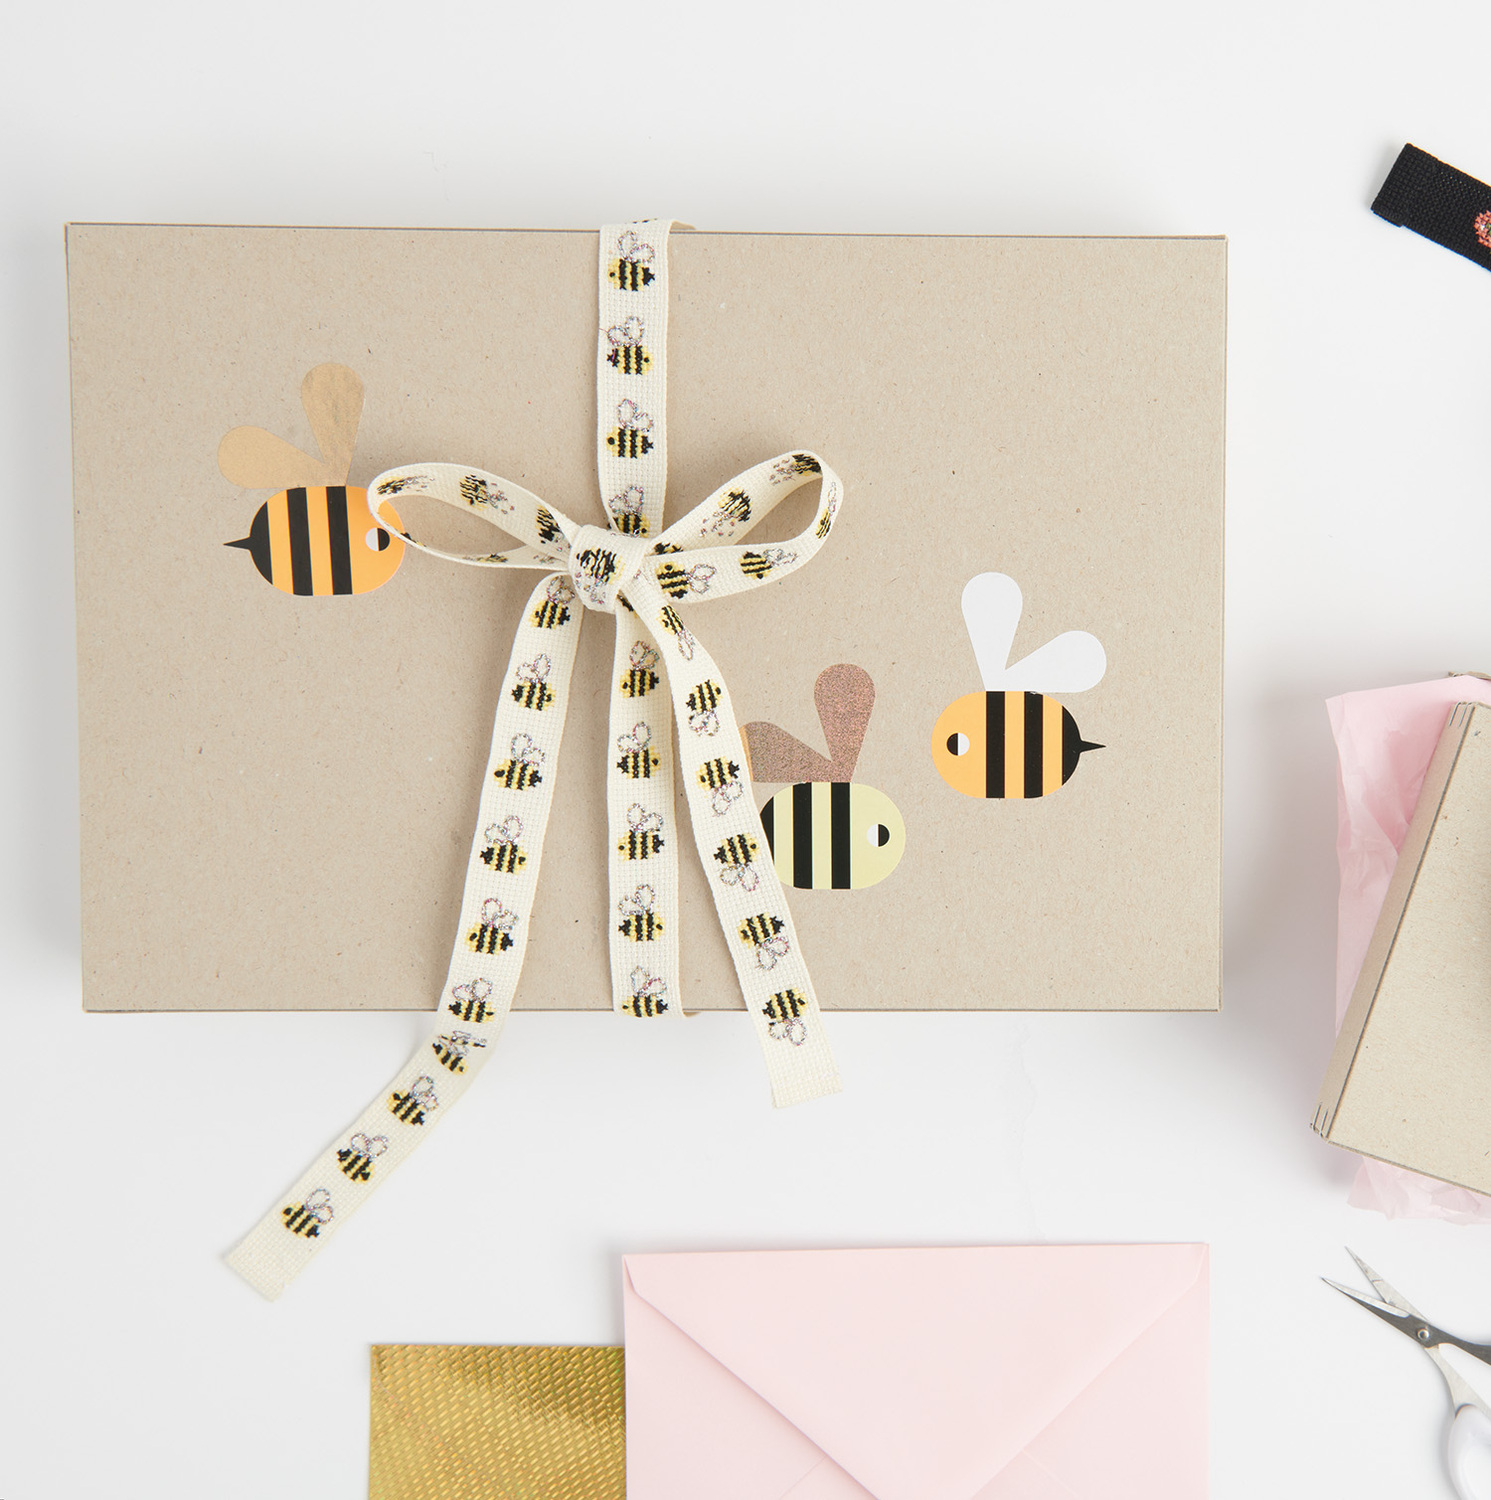 Stickanleitung Geschenkband mit Bienen